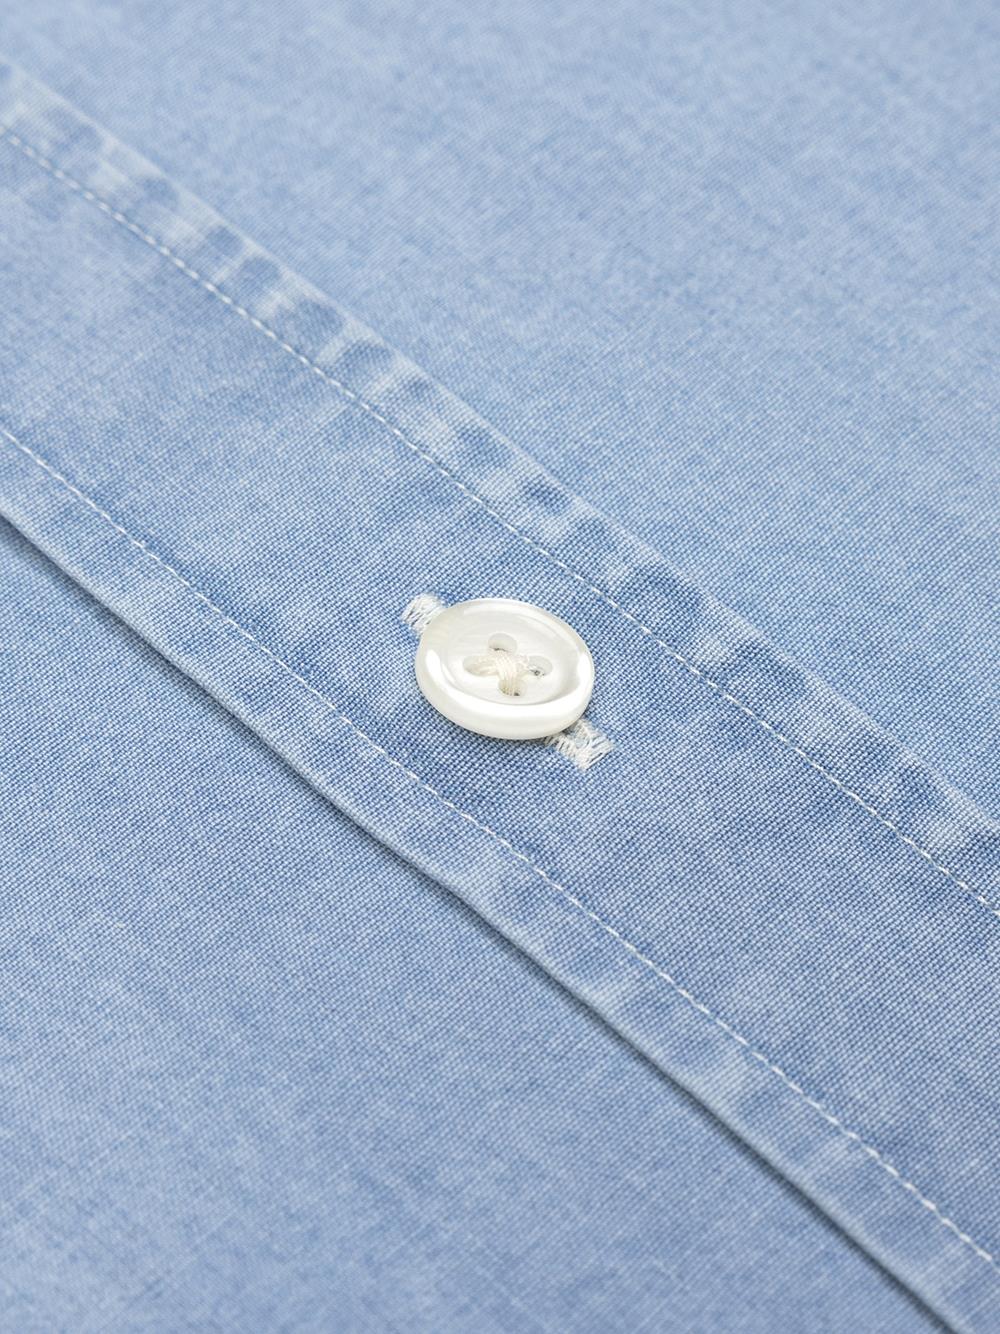 Dane Taillierthemd aus himmelblauem Denim - Button down kragen